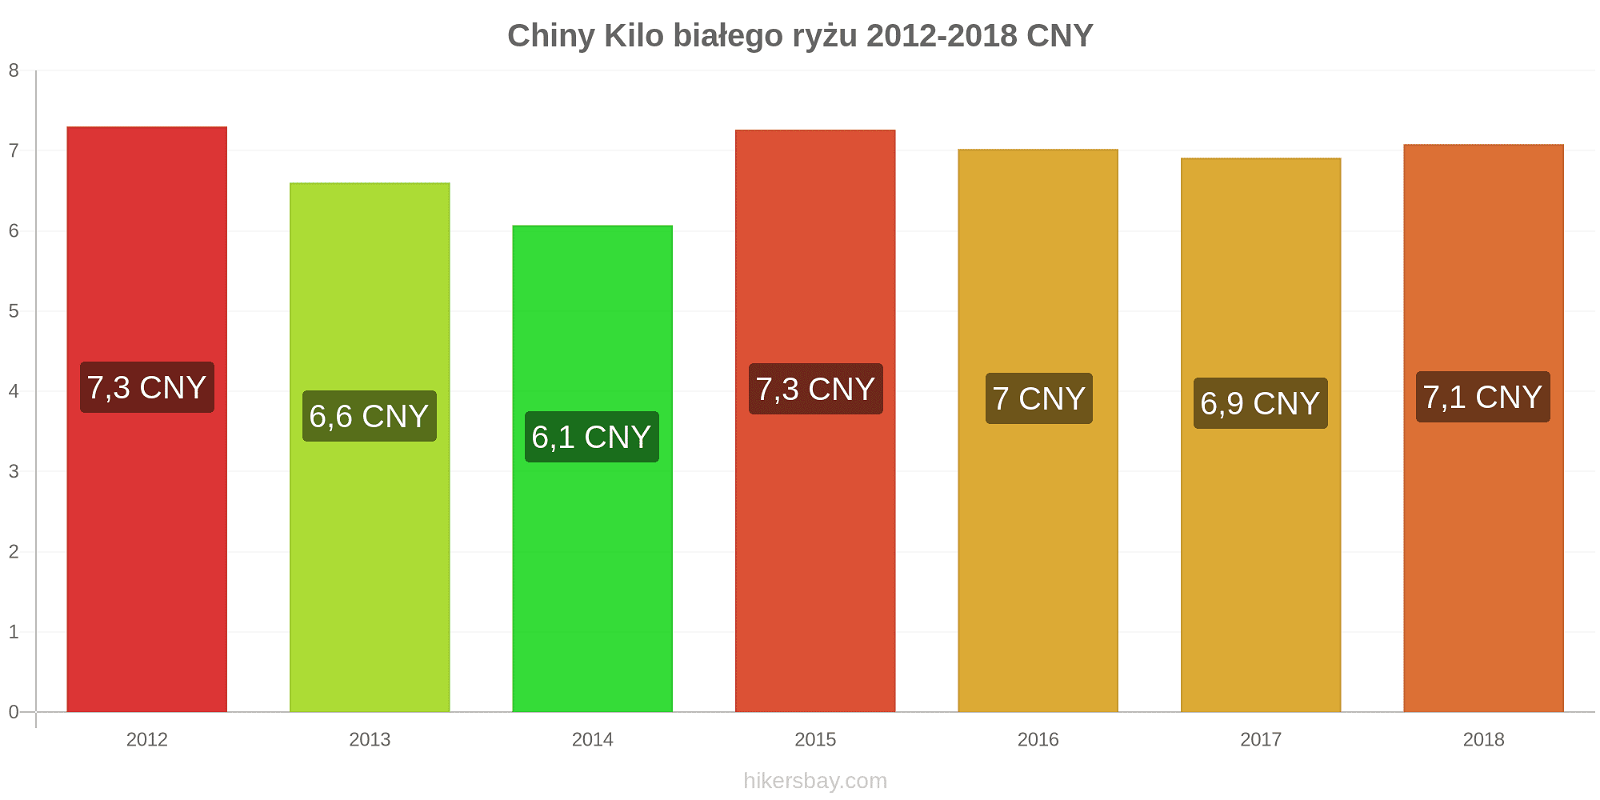 Chiny zmiany cen Kilo białego ryżu hikersbay.com